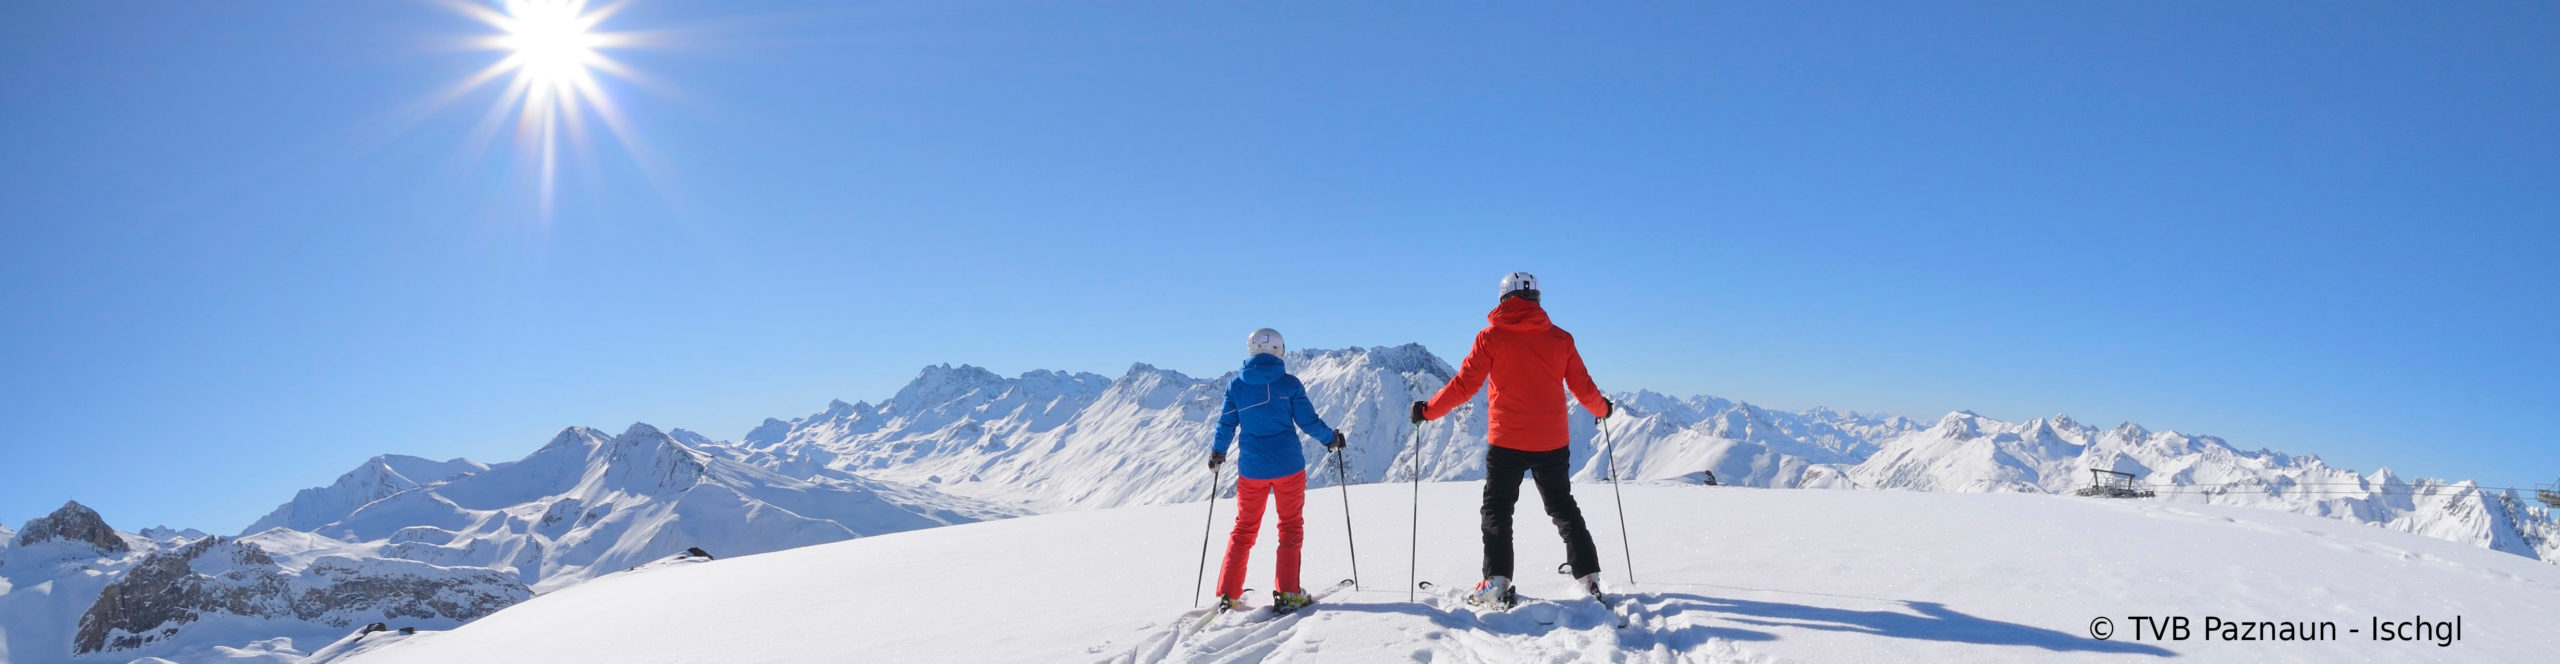 Andreas GABALIER im Montafon & ISCHGL- Skiwochenende in zwei TOP Skigebiete und MEGA Konzert 